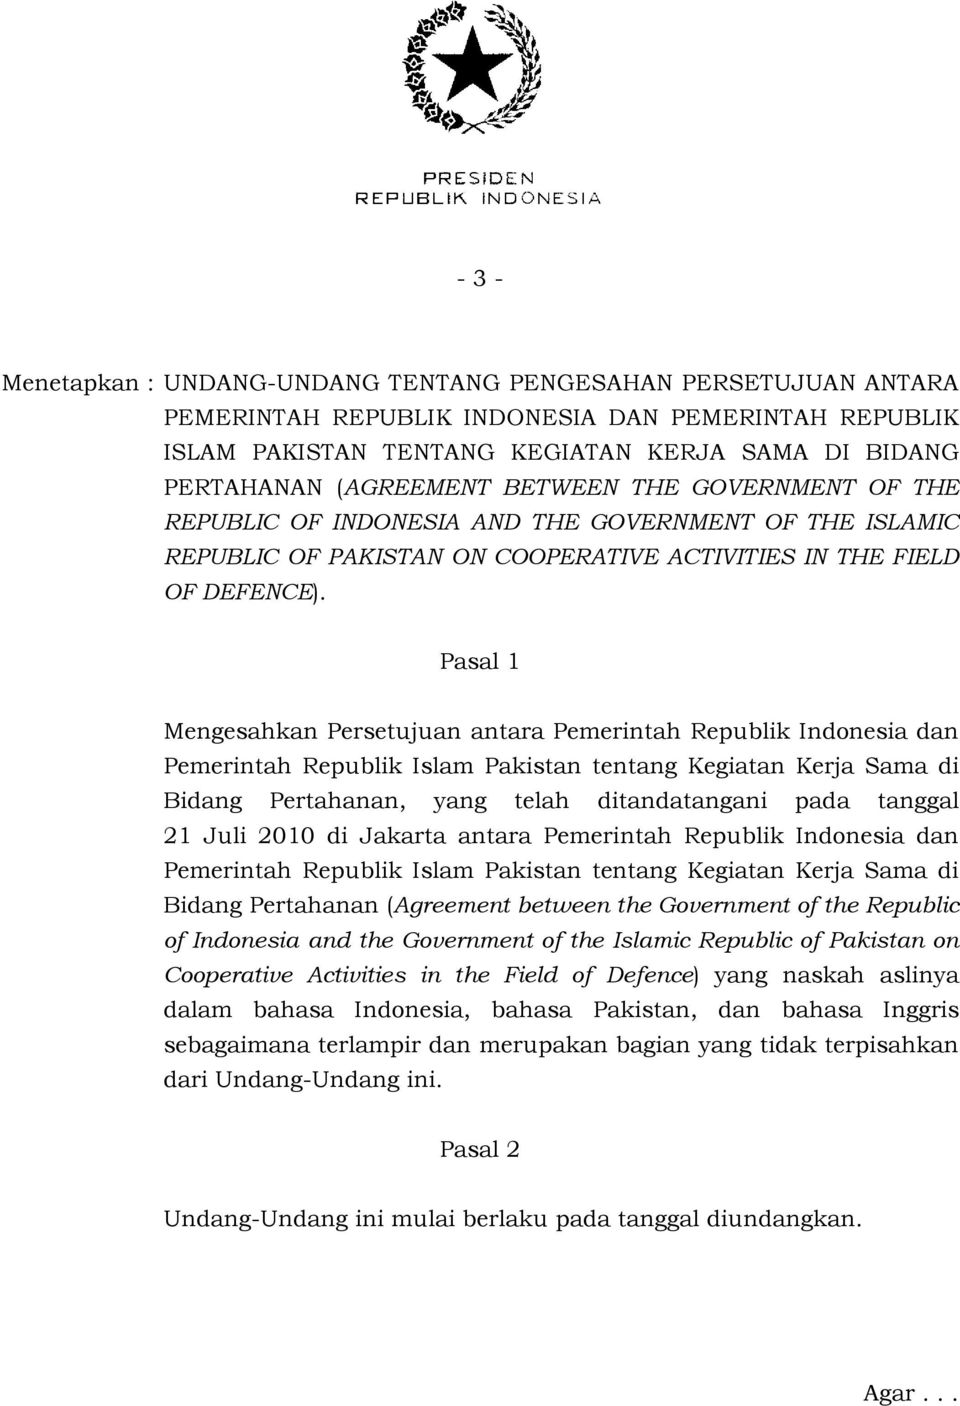 Pasal 1 Mengesahkan Persetujuan antara Pemerintah Republik Indonesia dan Pemerintah Republik Islam Pakistan tentang Kegiatan Kerja Sama di Bidang Pertahanan, yang telah ditandatangani pada tanggal 21